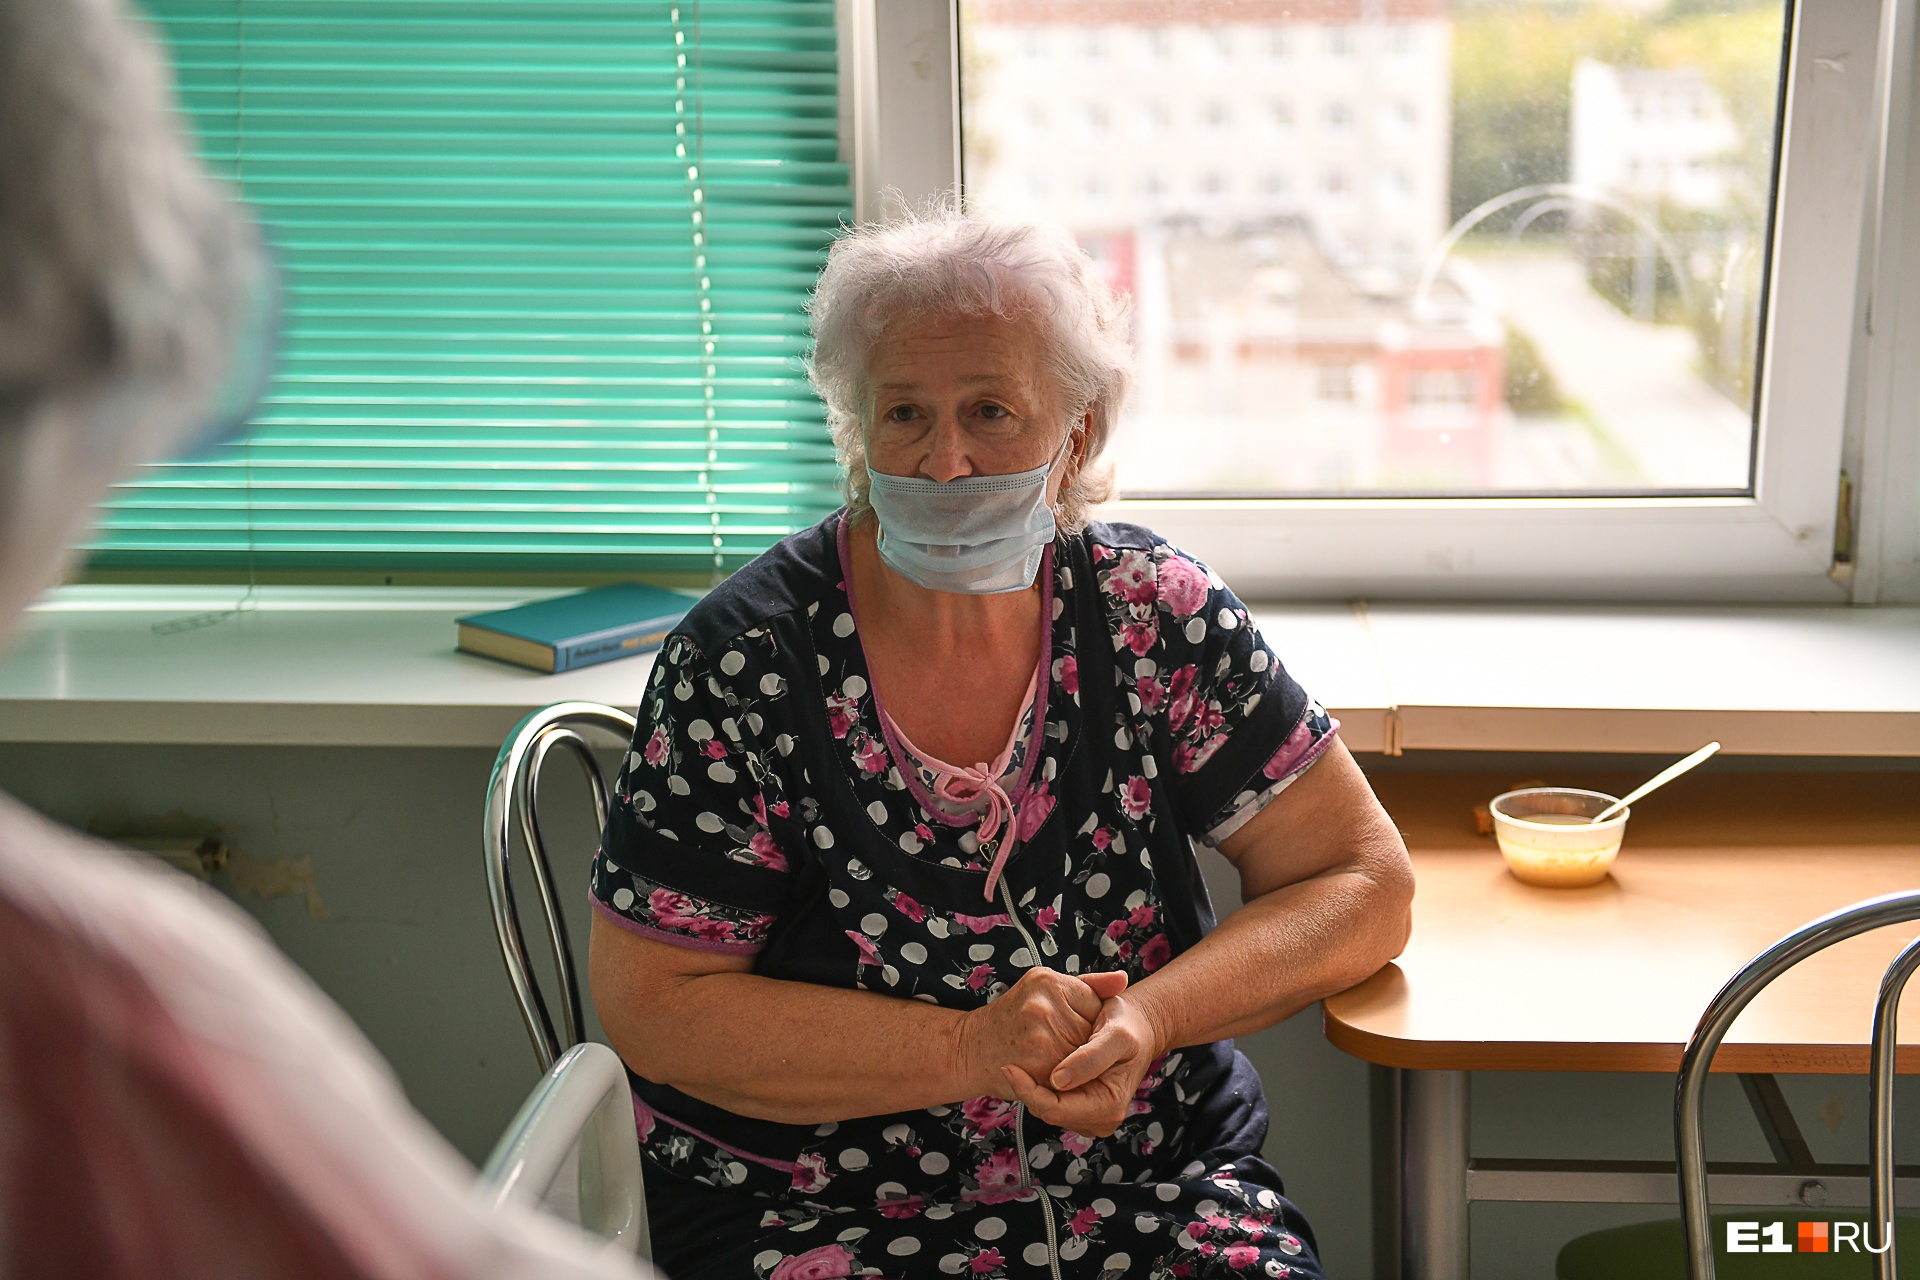 Раисе Алексеевне 67 лет, она идет на поправку, дышала сама, без кислородной поддержки. Надеется скоро выписаться